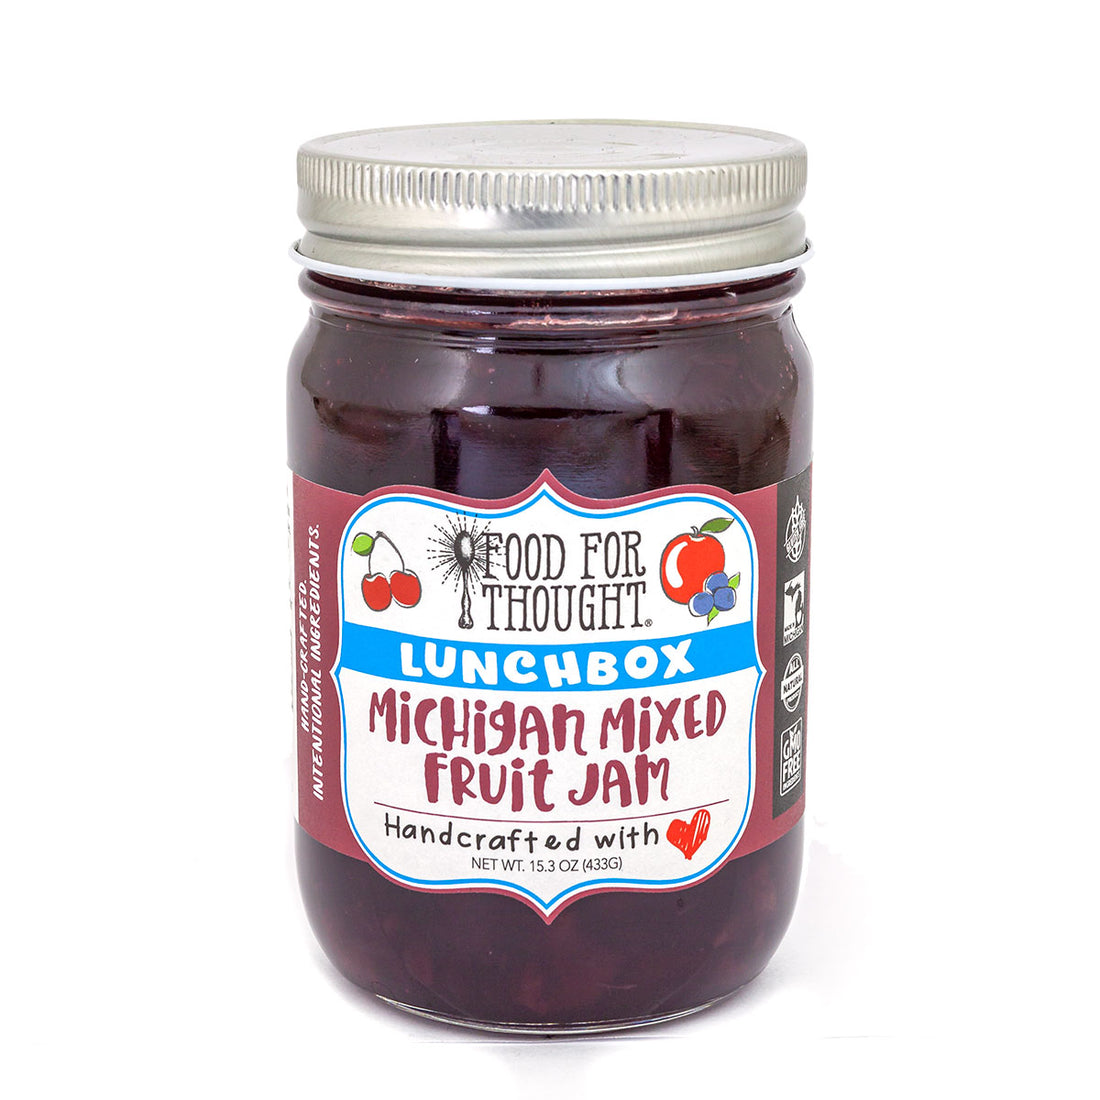 Truly Natural Michigan Mixed Fruit Jam